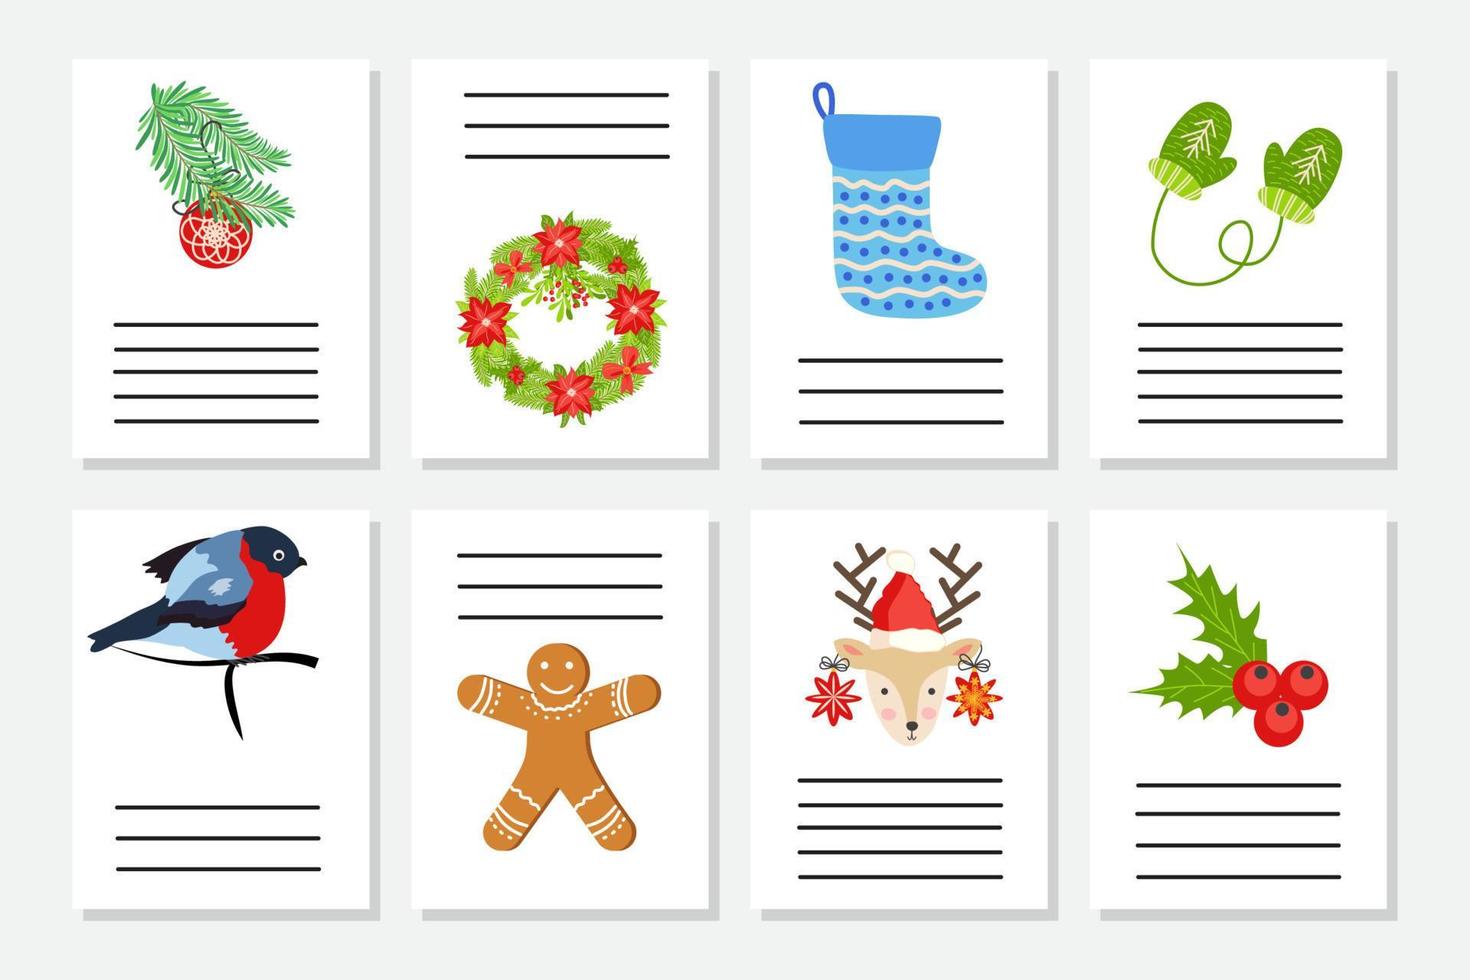 reeks van Kerstmis groet of uitnodiging. ansichtkaarten met nieuw jaren symbolen, Kerstmis boom, sneeuwvlokken, geschenken, snoep riet vector